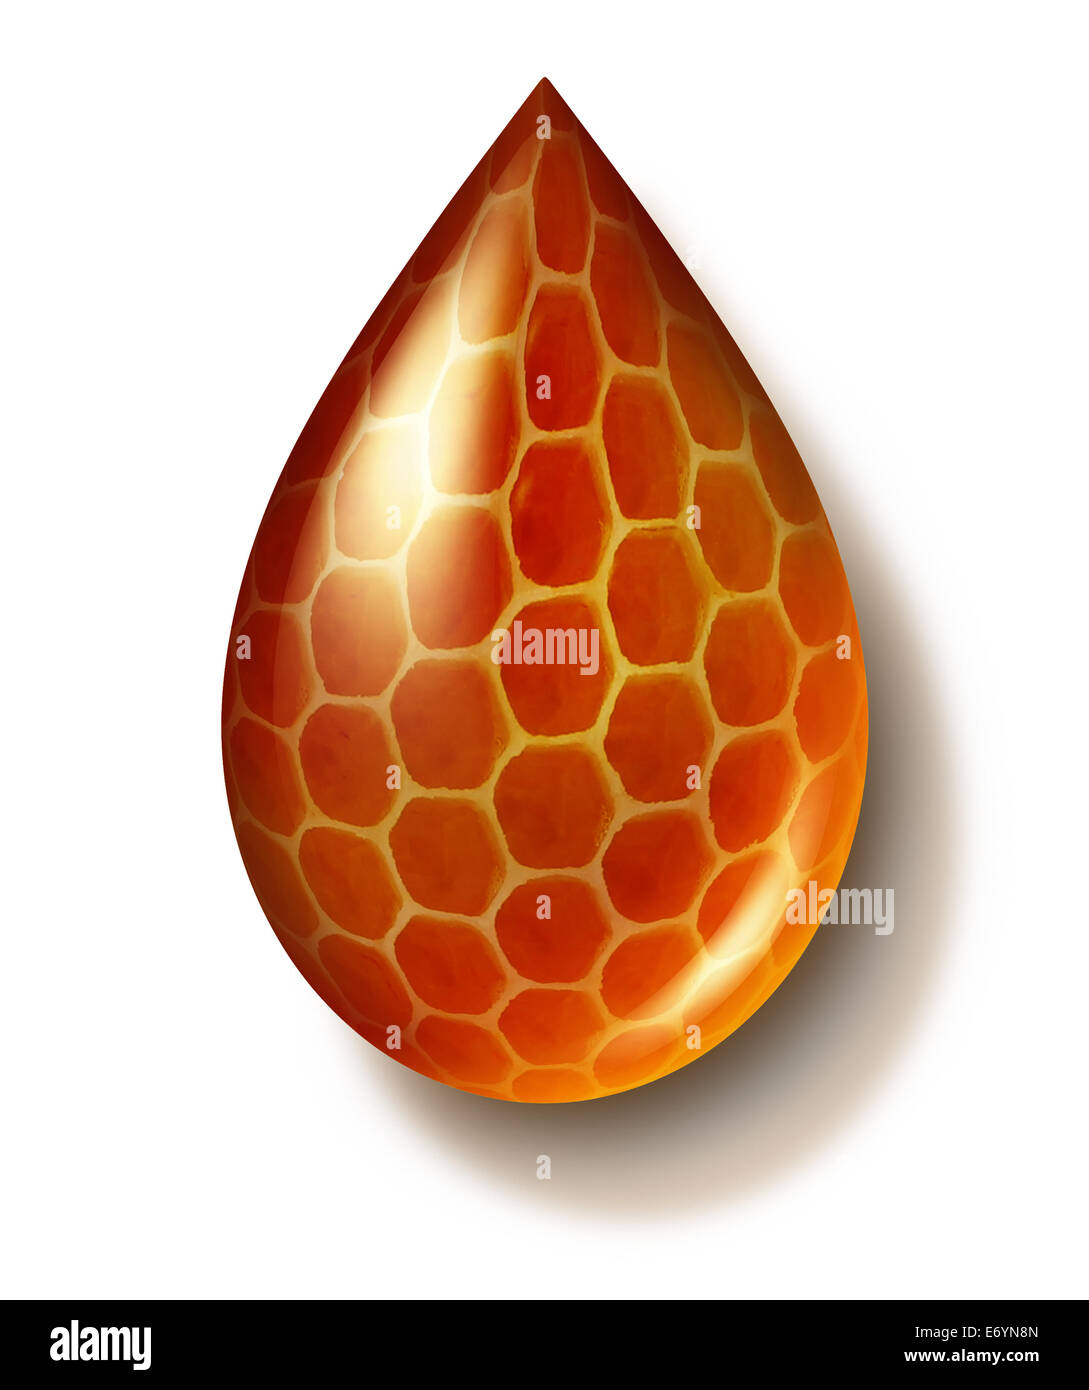 Chute de miel et de miel ou symbole Honey comb créé par les abeilles comme un mode de vie sain l'icône d'édulcorant liquide organique naturelle de la nature des aliments contenus dans les cellules de cire hexagonale. Banque D'Images